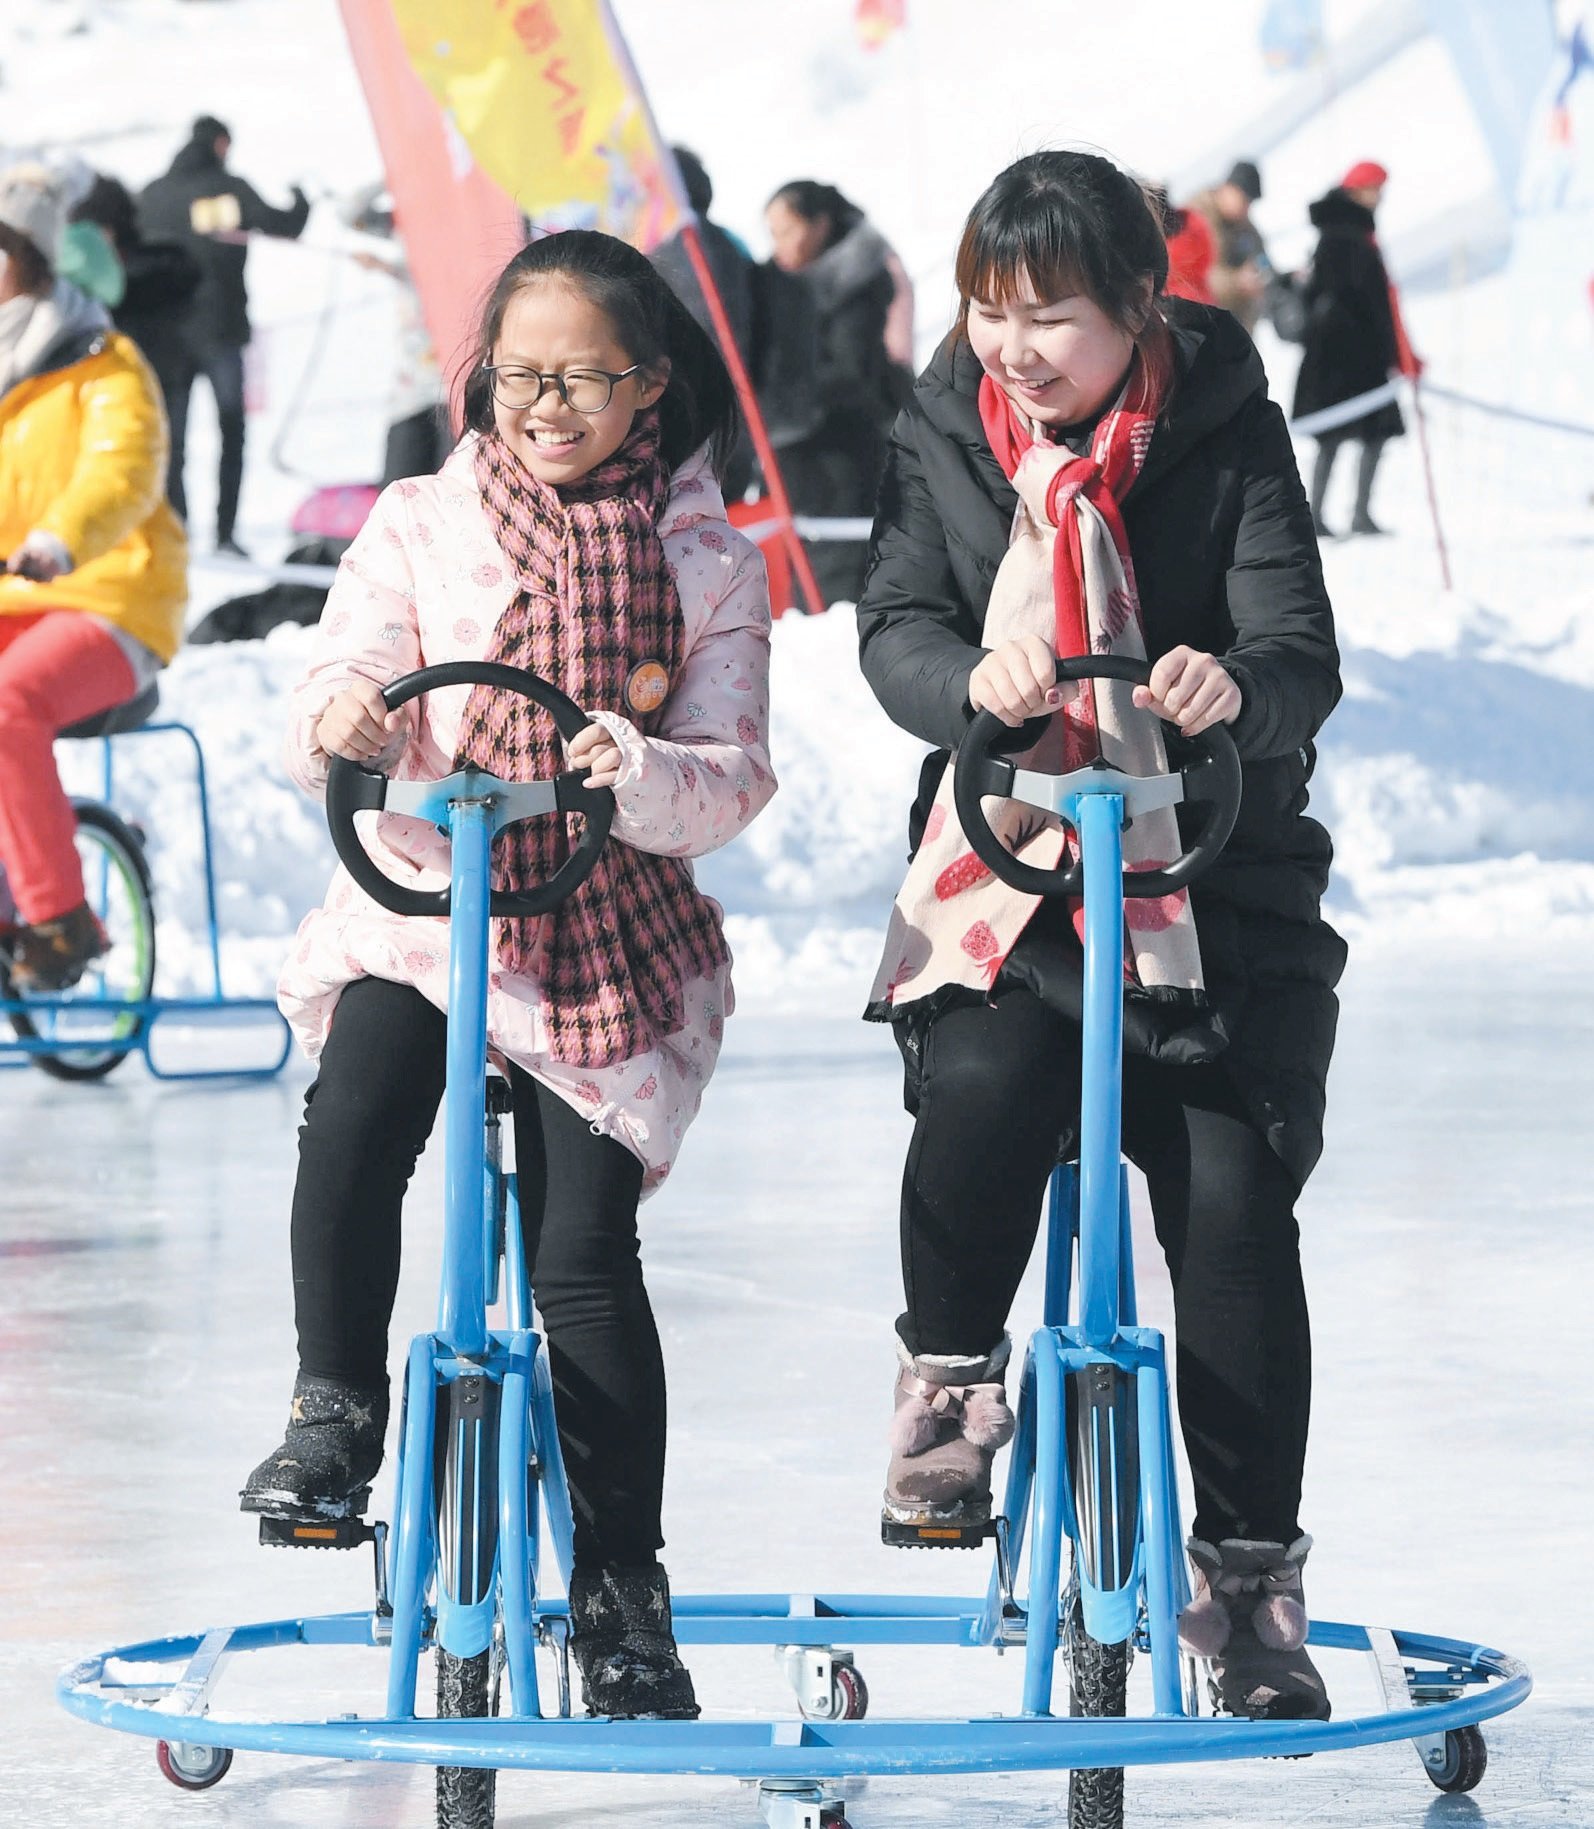 天池景区上周日推出赏天池美景、畅游冰雪大世界、天山纳福等主题活动。这是两名游客在天池景区的冰面上骑著特制脚车。